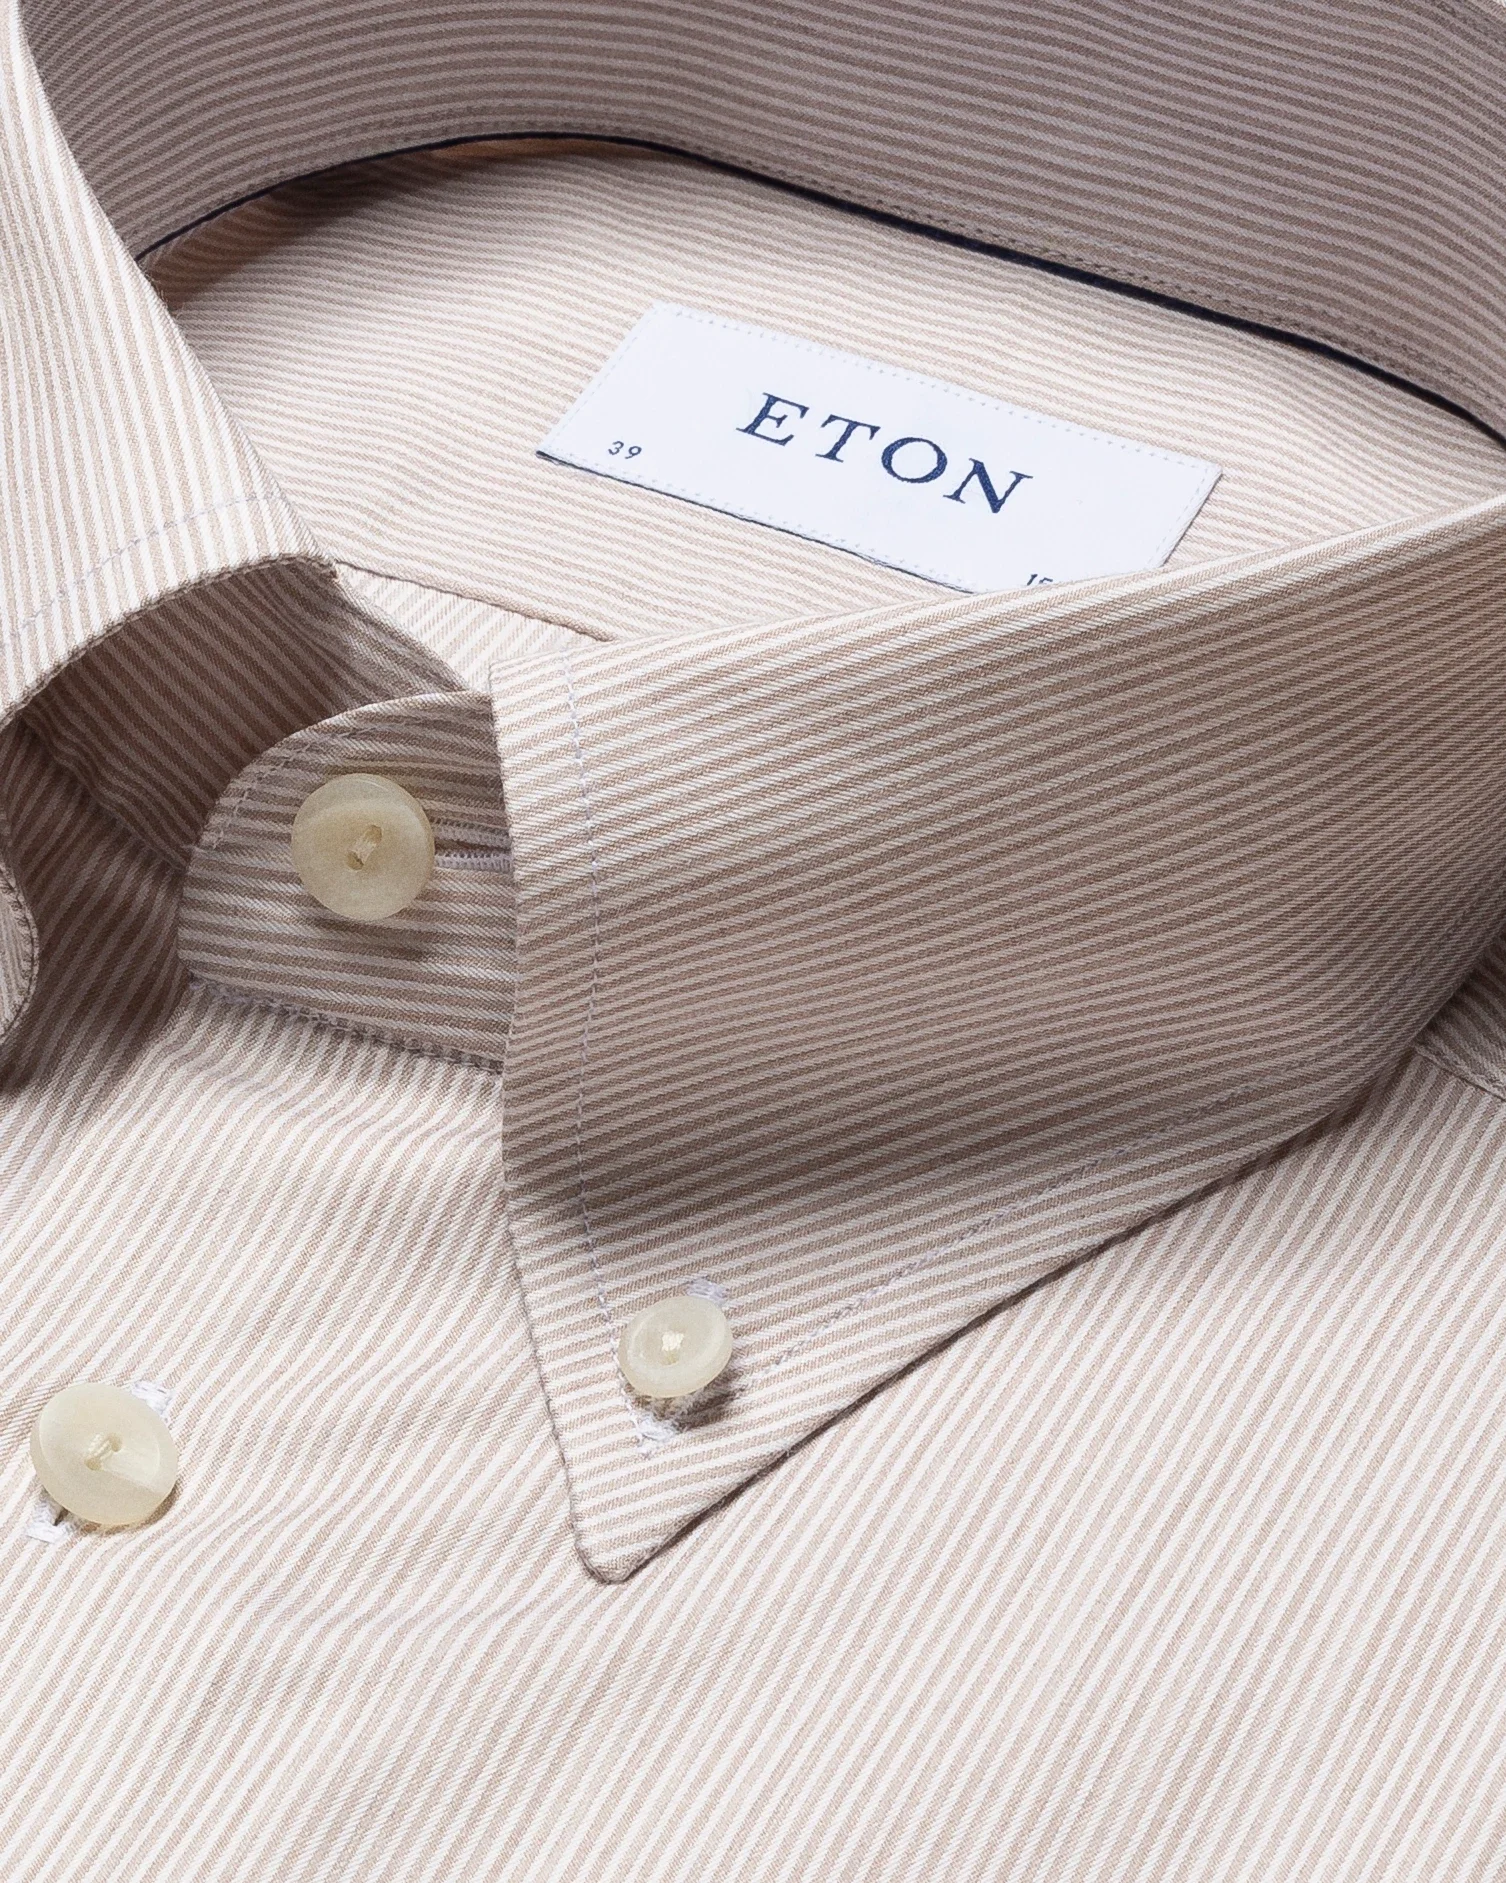 Eton - fine striped fine twill melange shirt